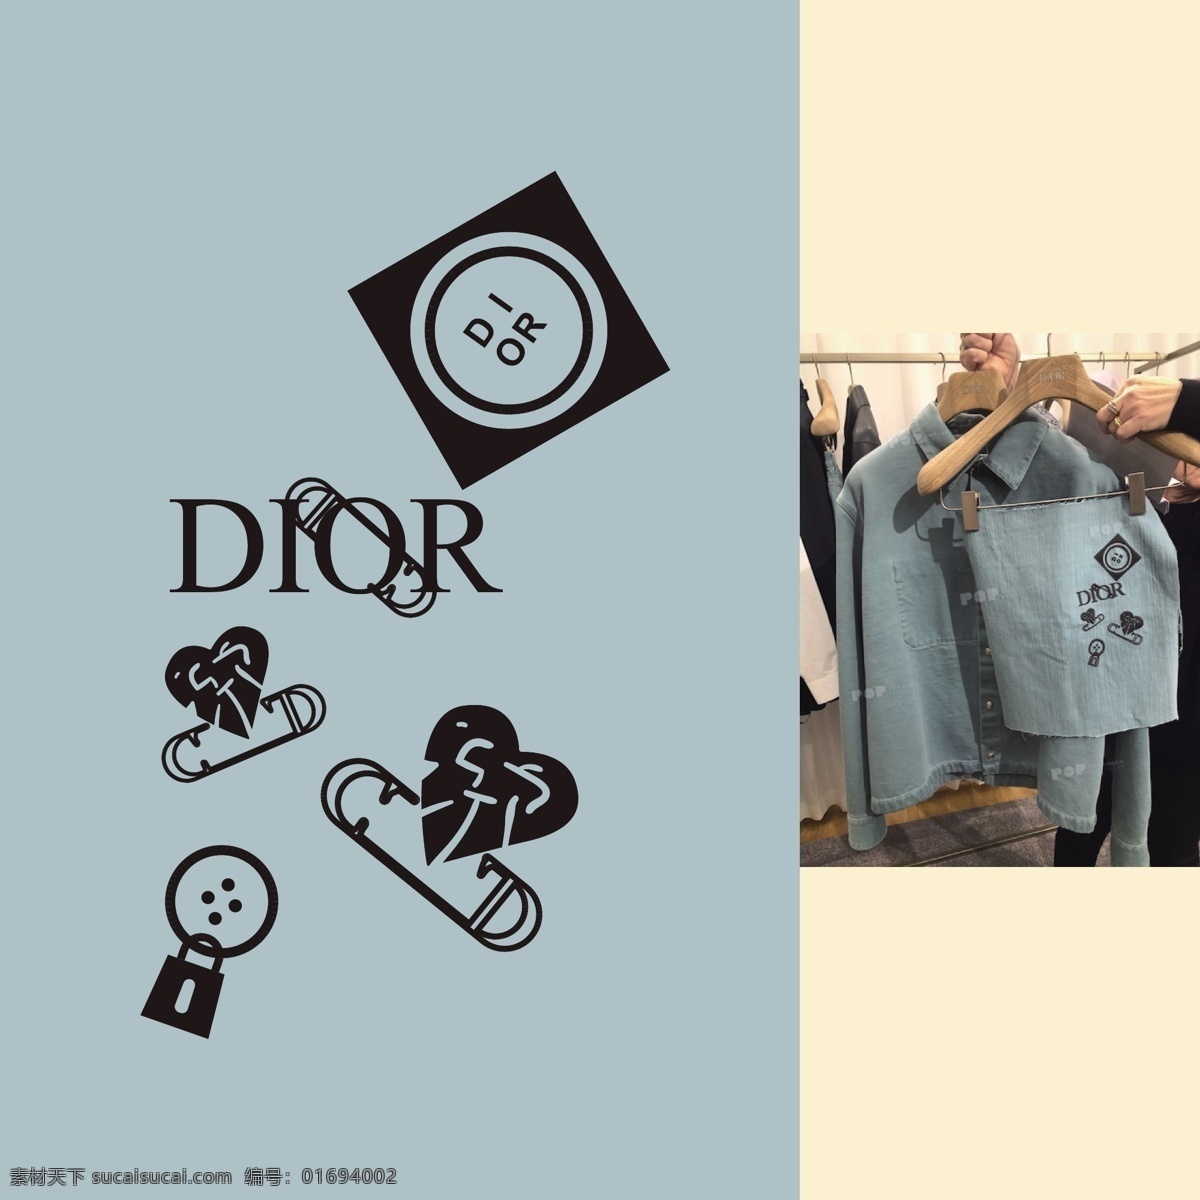 大牌 迪奥 dior 奢侈品 印花 服装 大牌图案 动漫动画 动漫人物